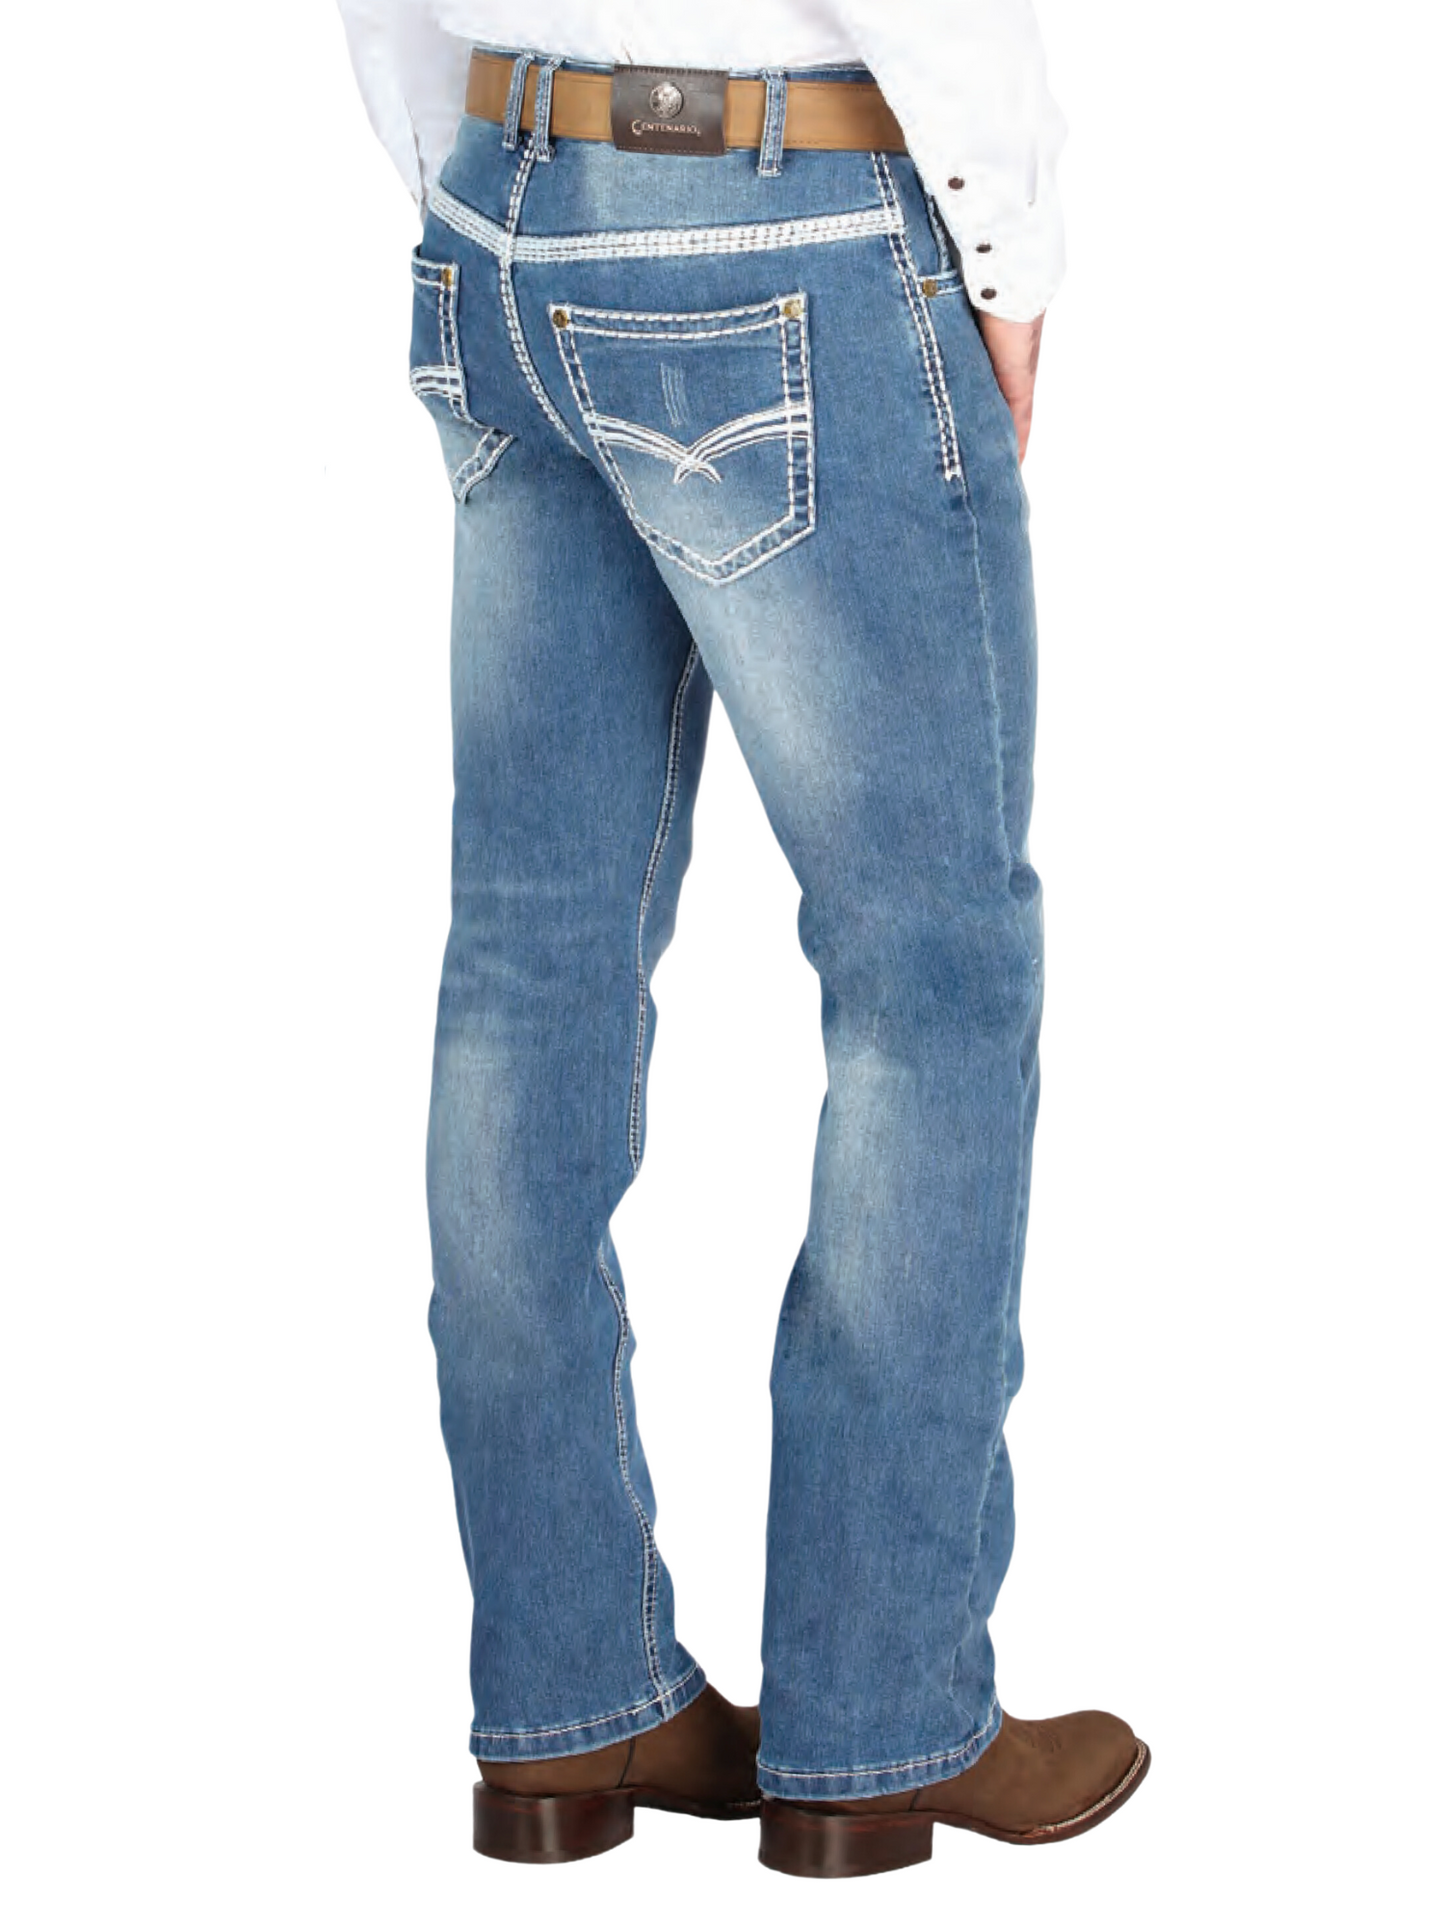 Pantalon Vaquero de Mezclilla Boot Cut Azul Claro para Hombre 'Centenario' - ID: 44846 Denim Jeans Centenario 